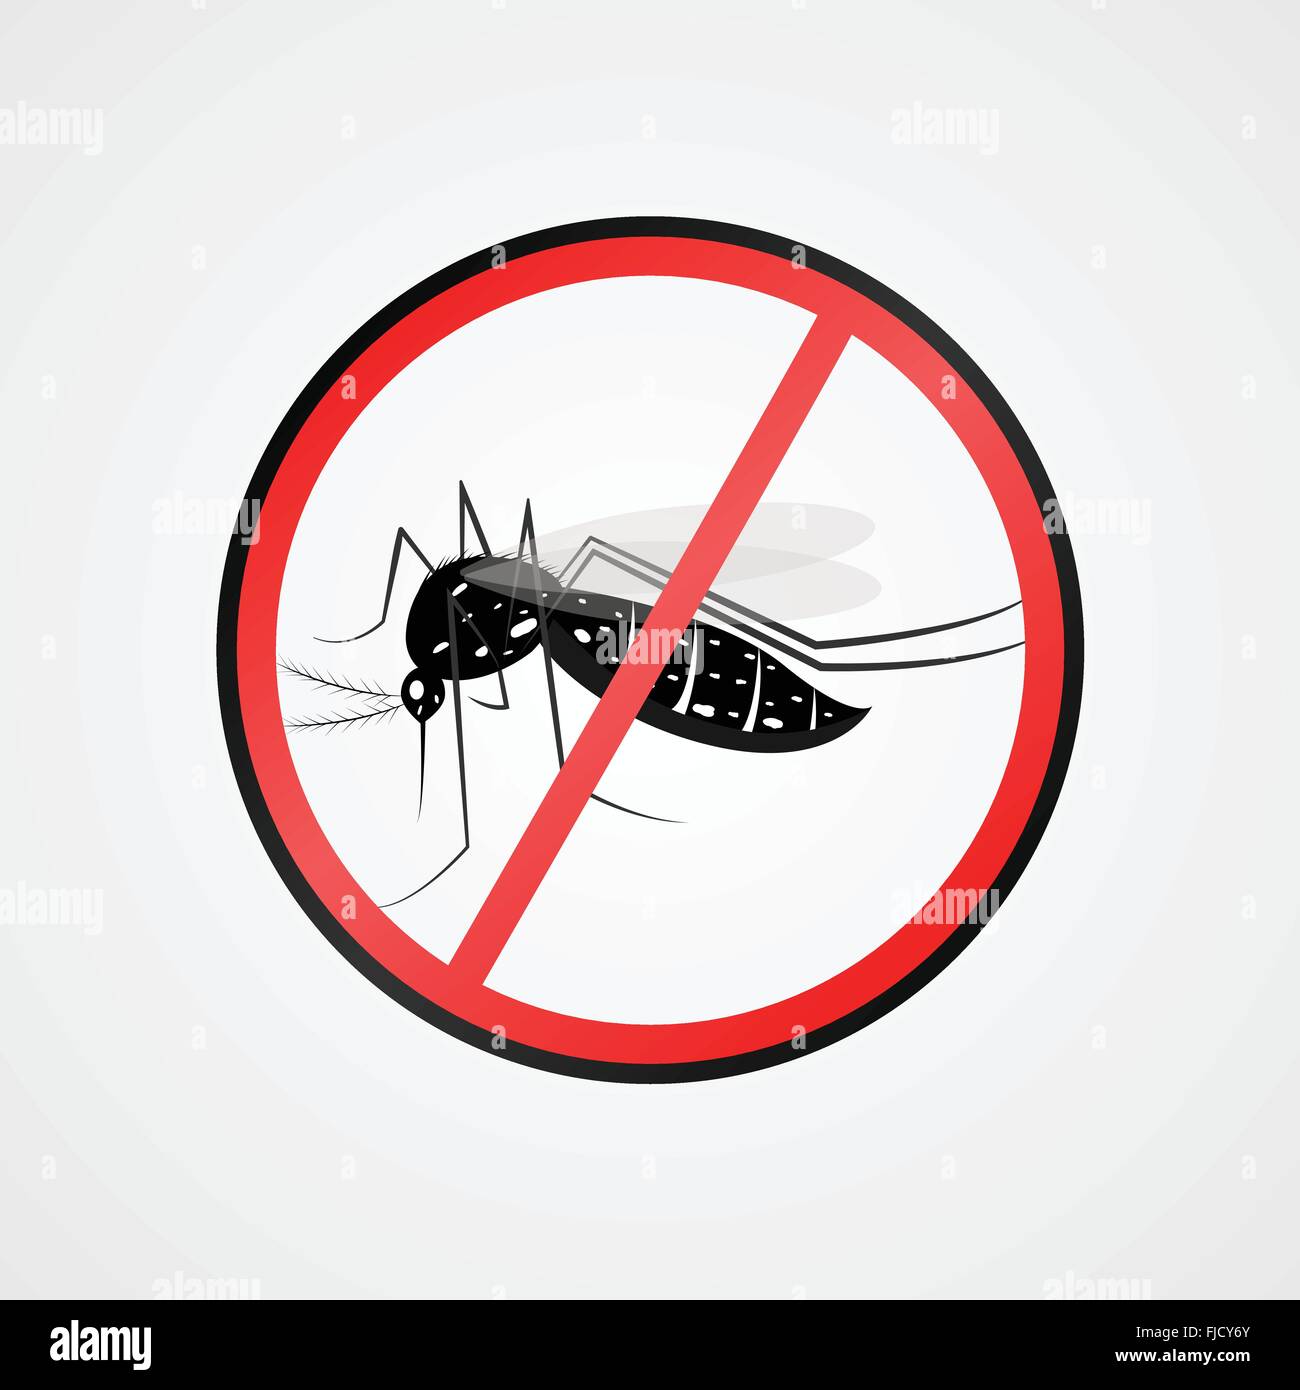 Symbole anti moustiques.panneau d'avertissement de moustiques.Les moustiques s'agit de maladies comme la dengue, la fièvre jaune, maladie zika Illustration de Vecteur